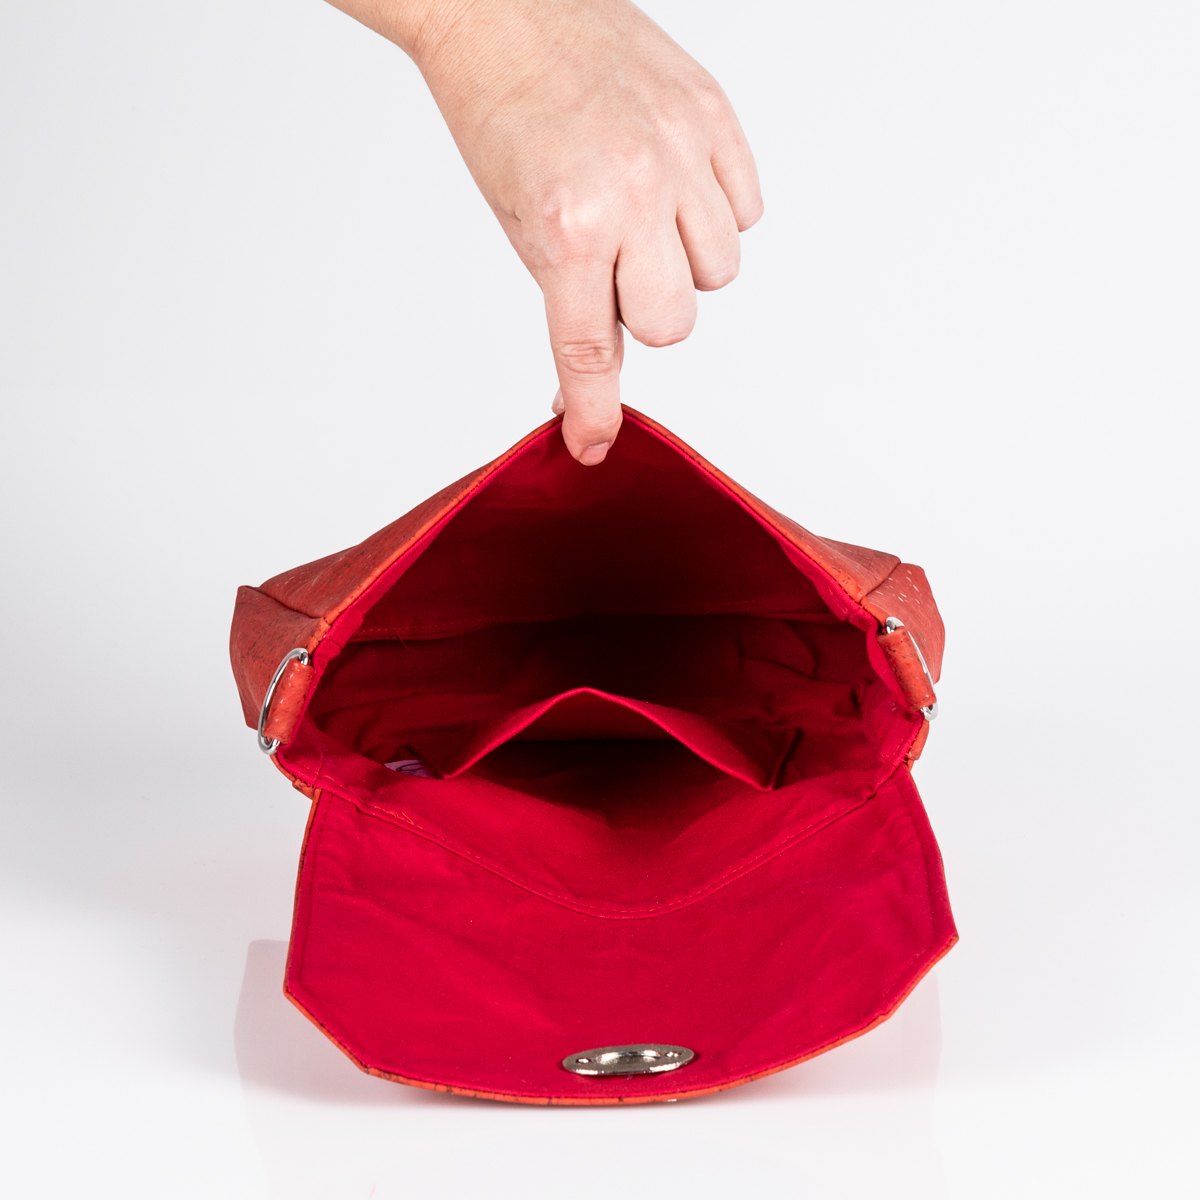 Handtasche Sally in Rot von Q.Linda Manufaktur Innenansicht